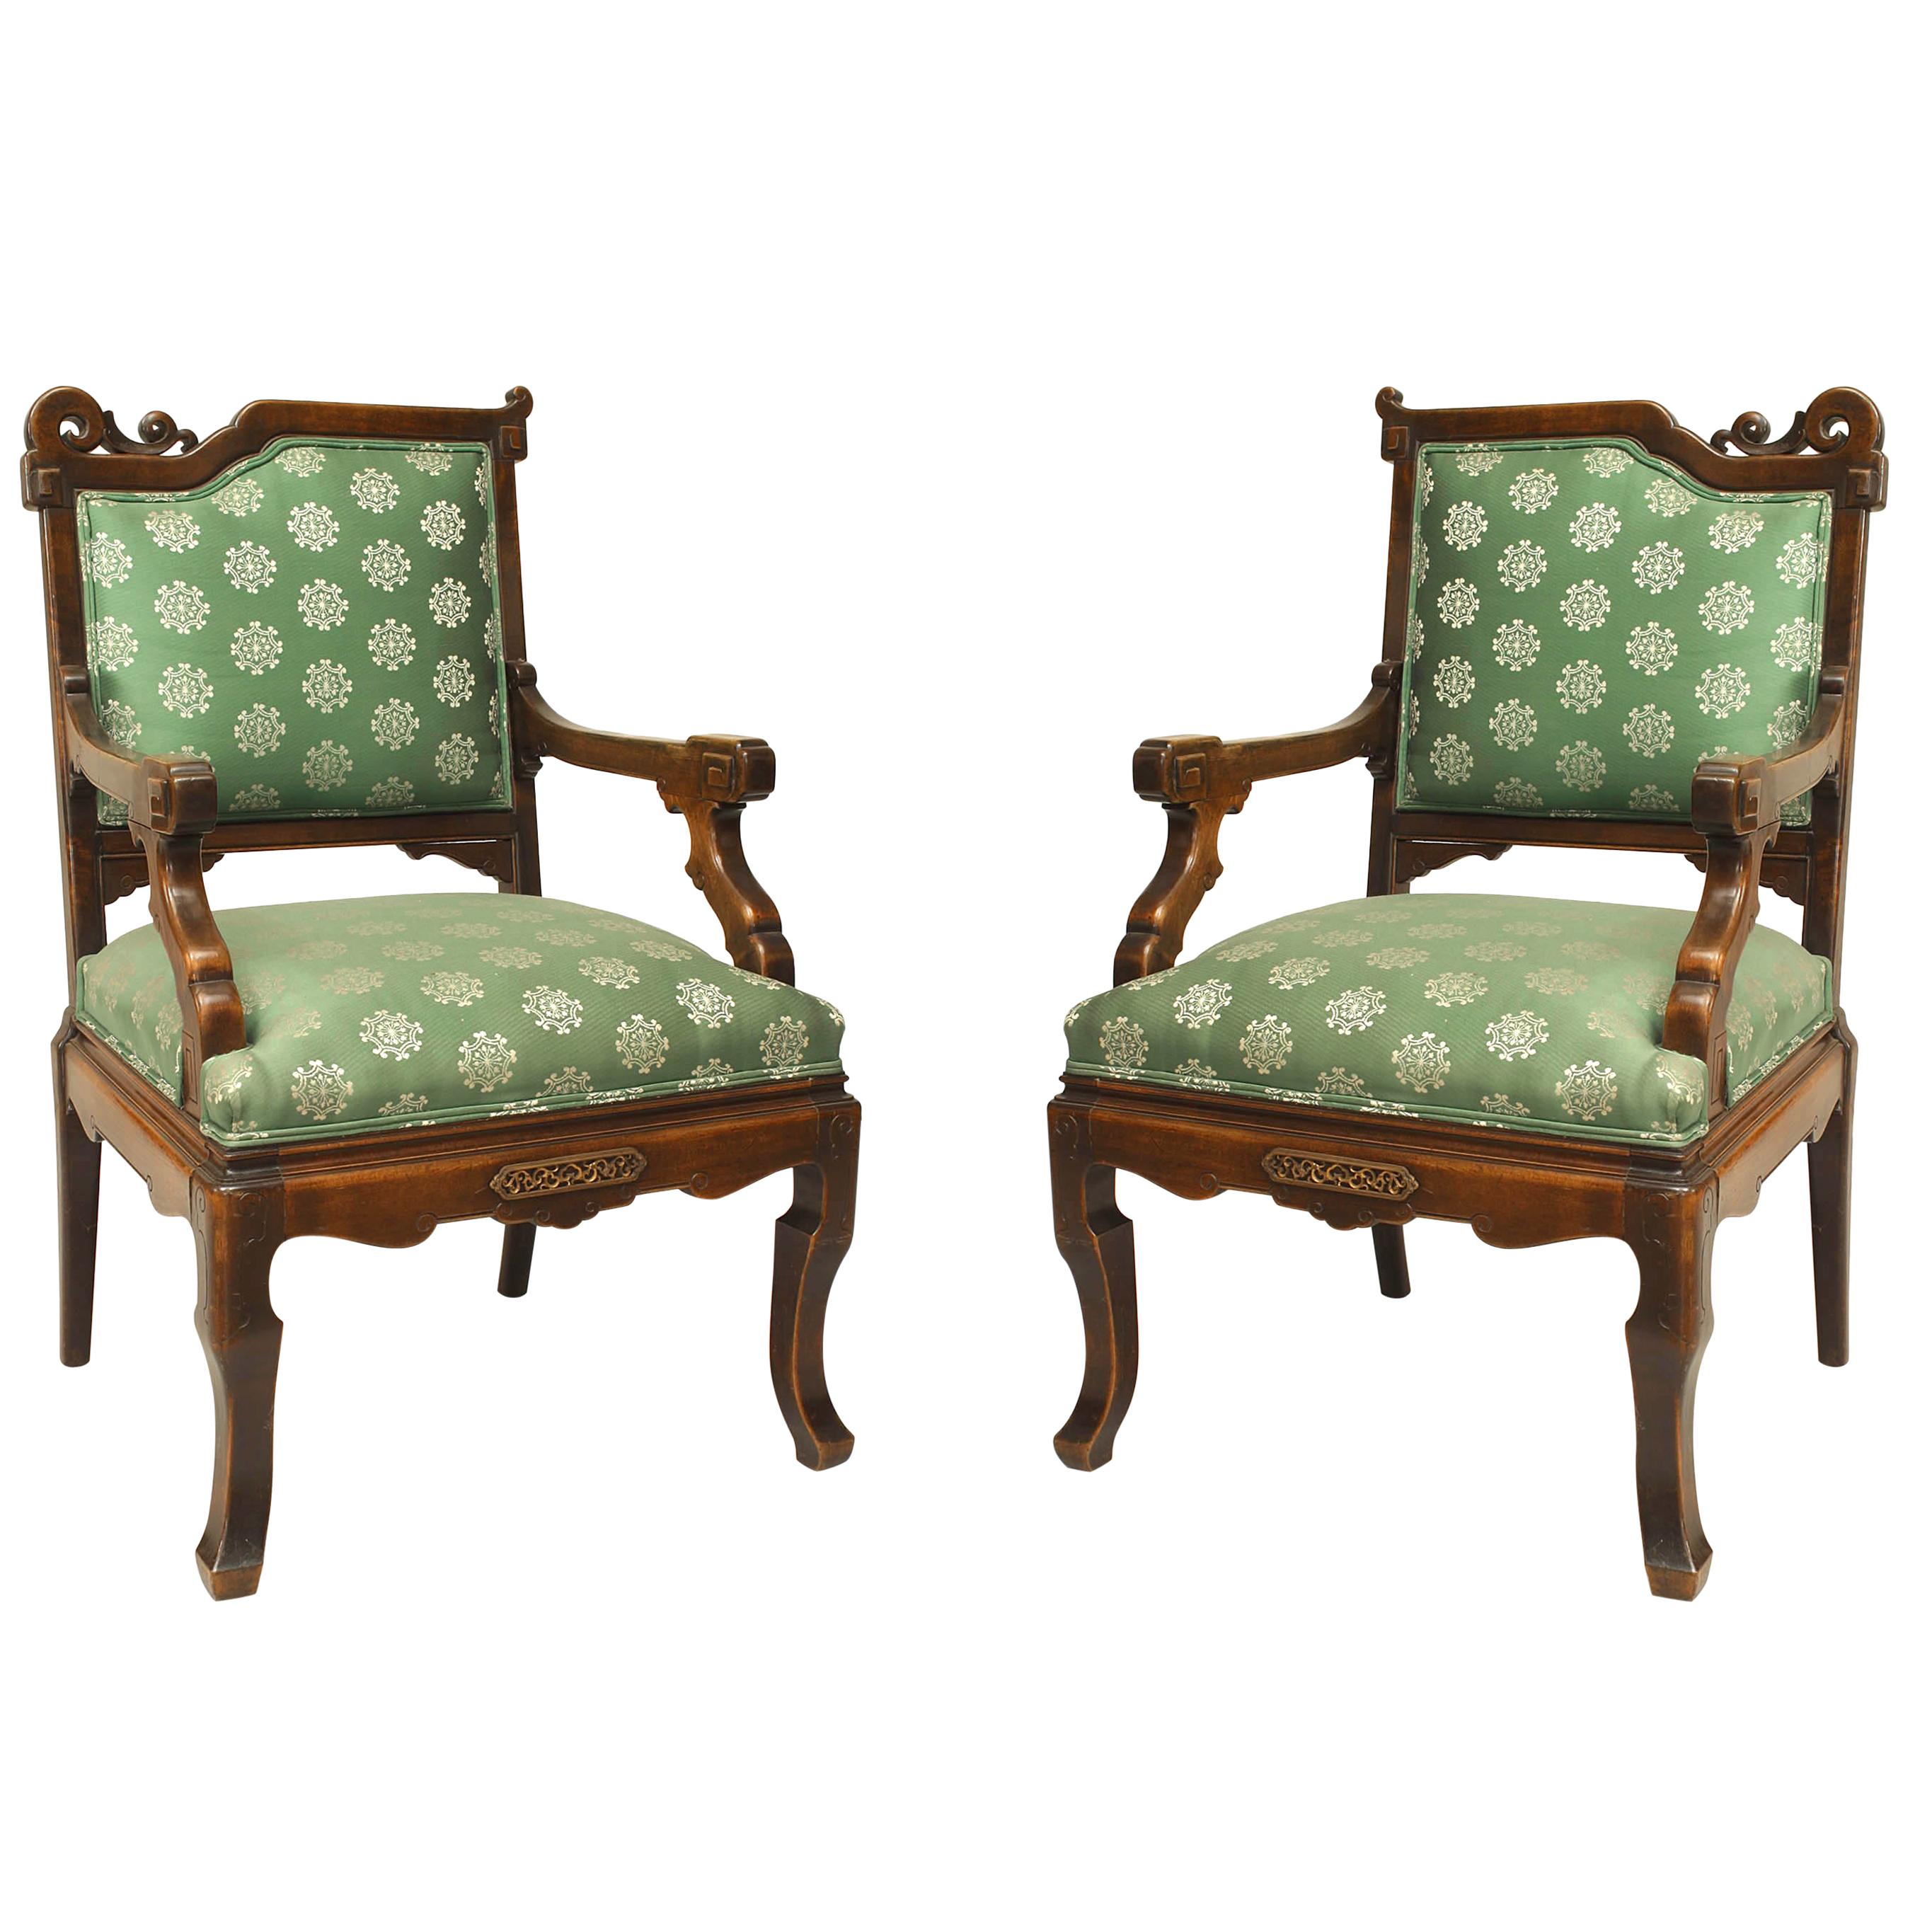 Paire de fauteuils tapissés en acajou vert Viotdot de style Régence anglaise et chinoiserie